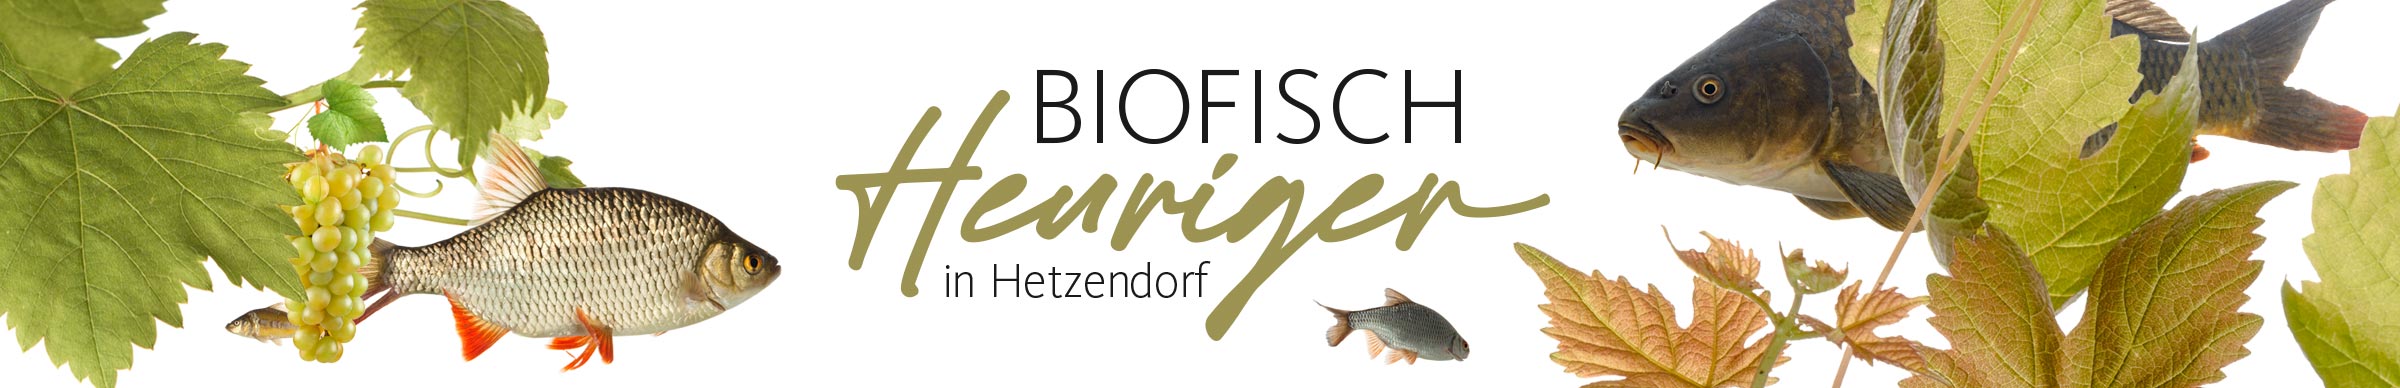 Biofisch Heuriger in Hetzendorf Visual